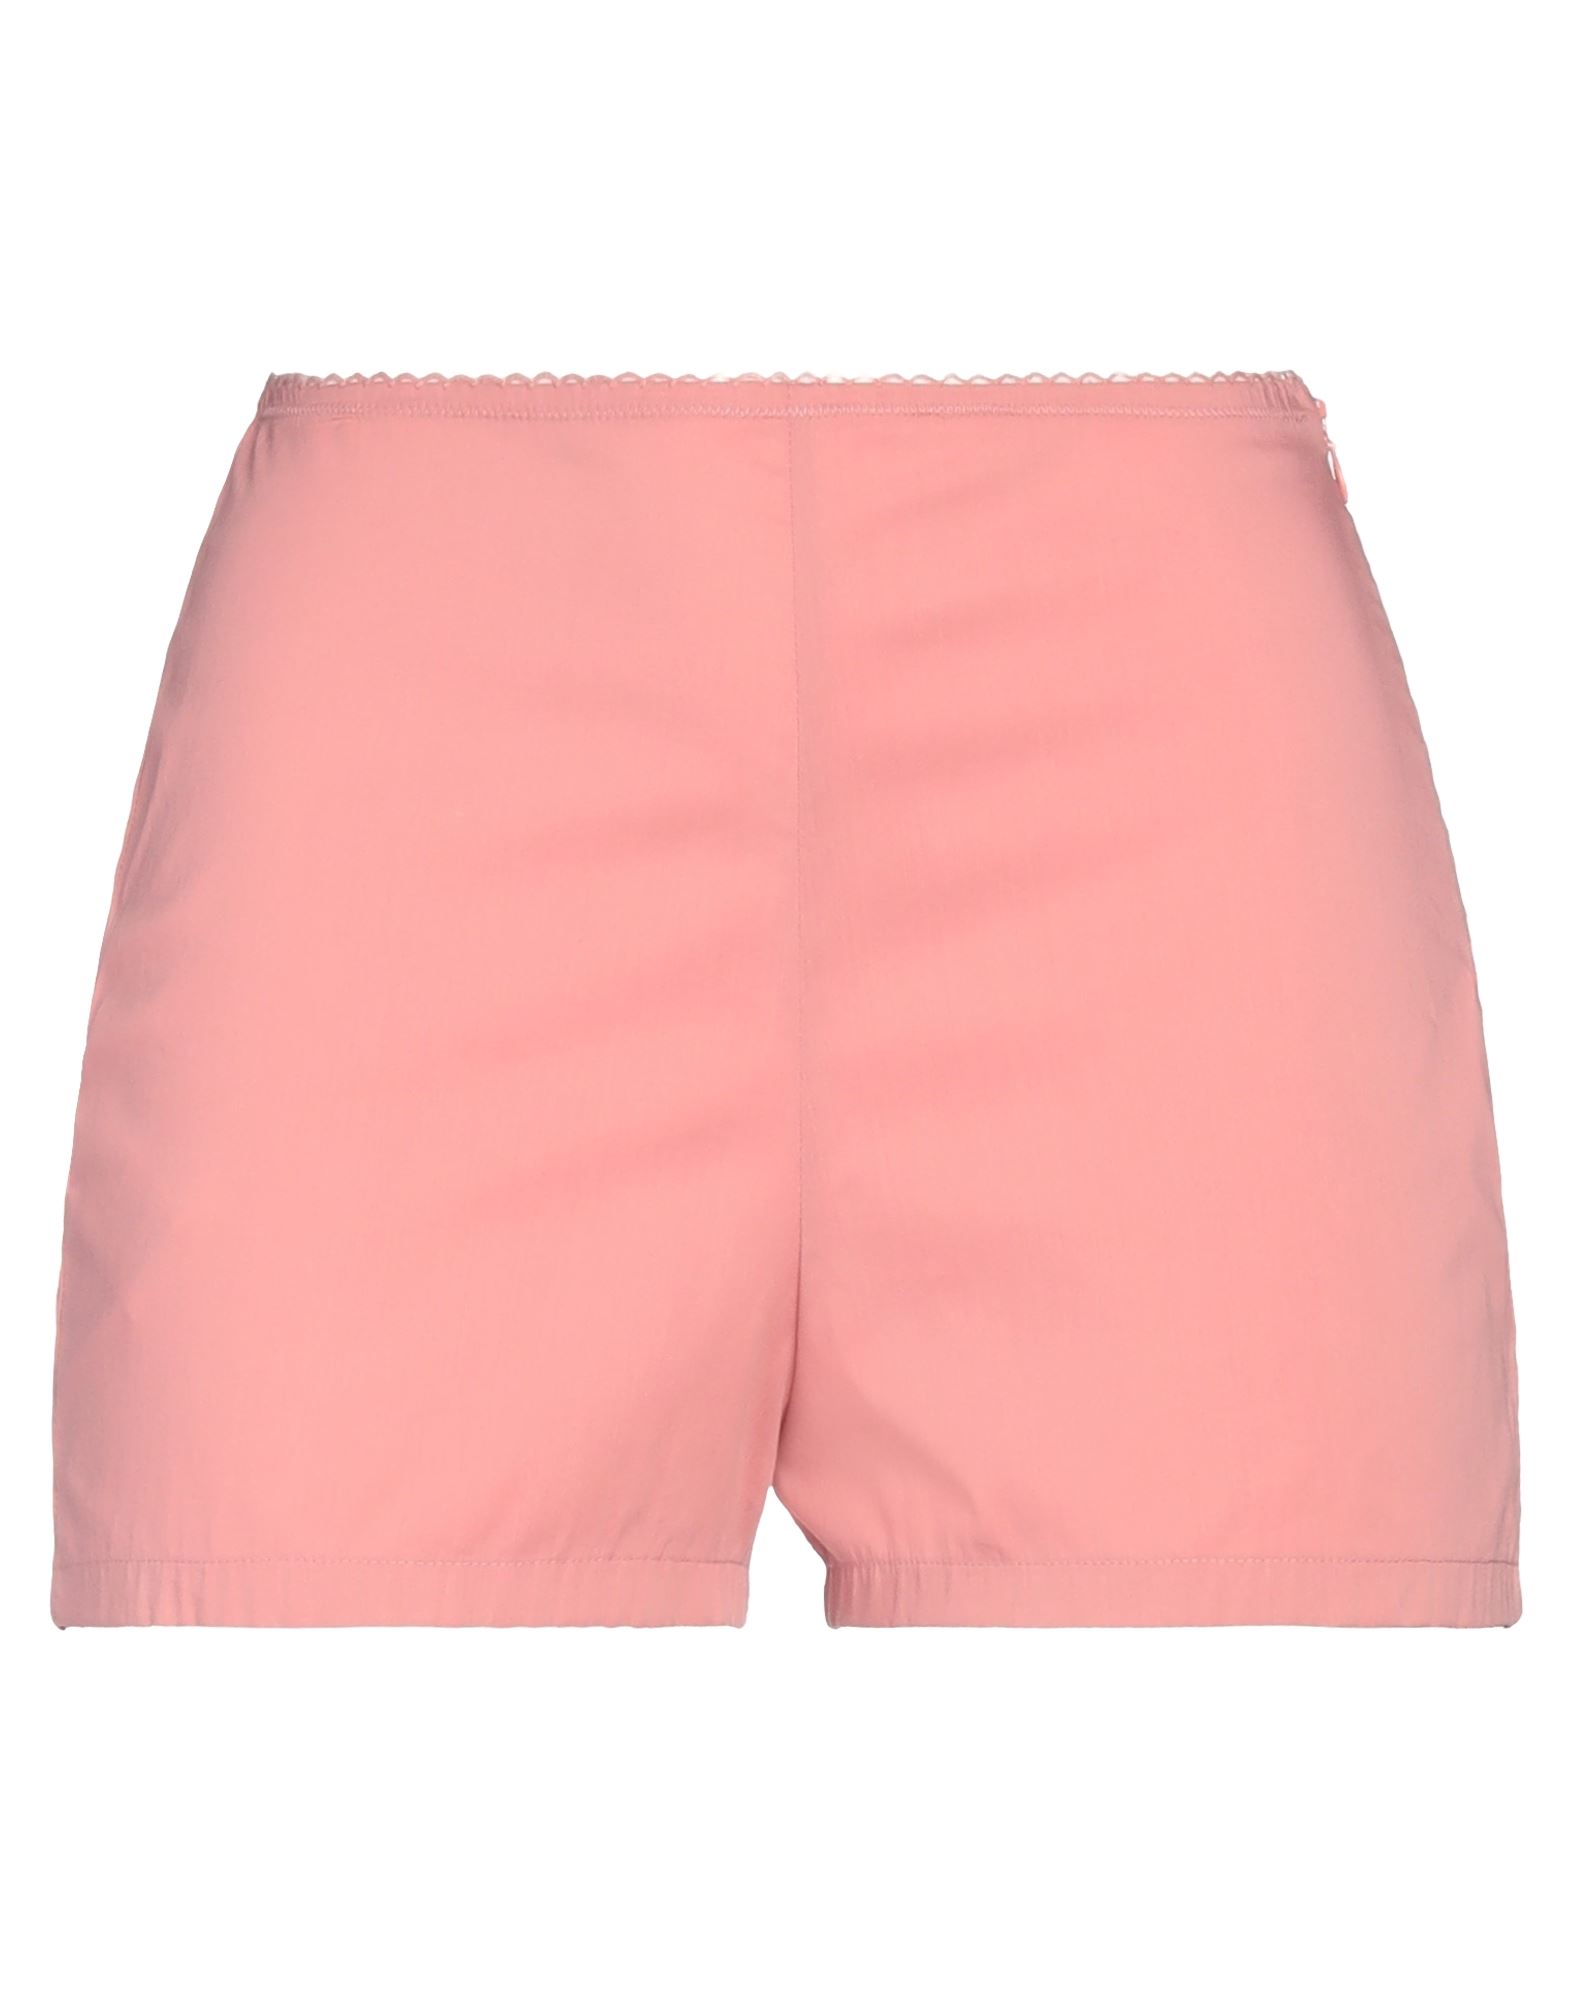 Kristina Ti Woman Shorts & Bermuda Shorts Pastel Pink Size 6 Cotton, Polyamide, Elastane